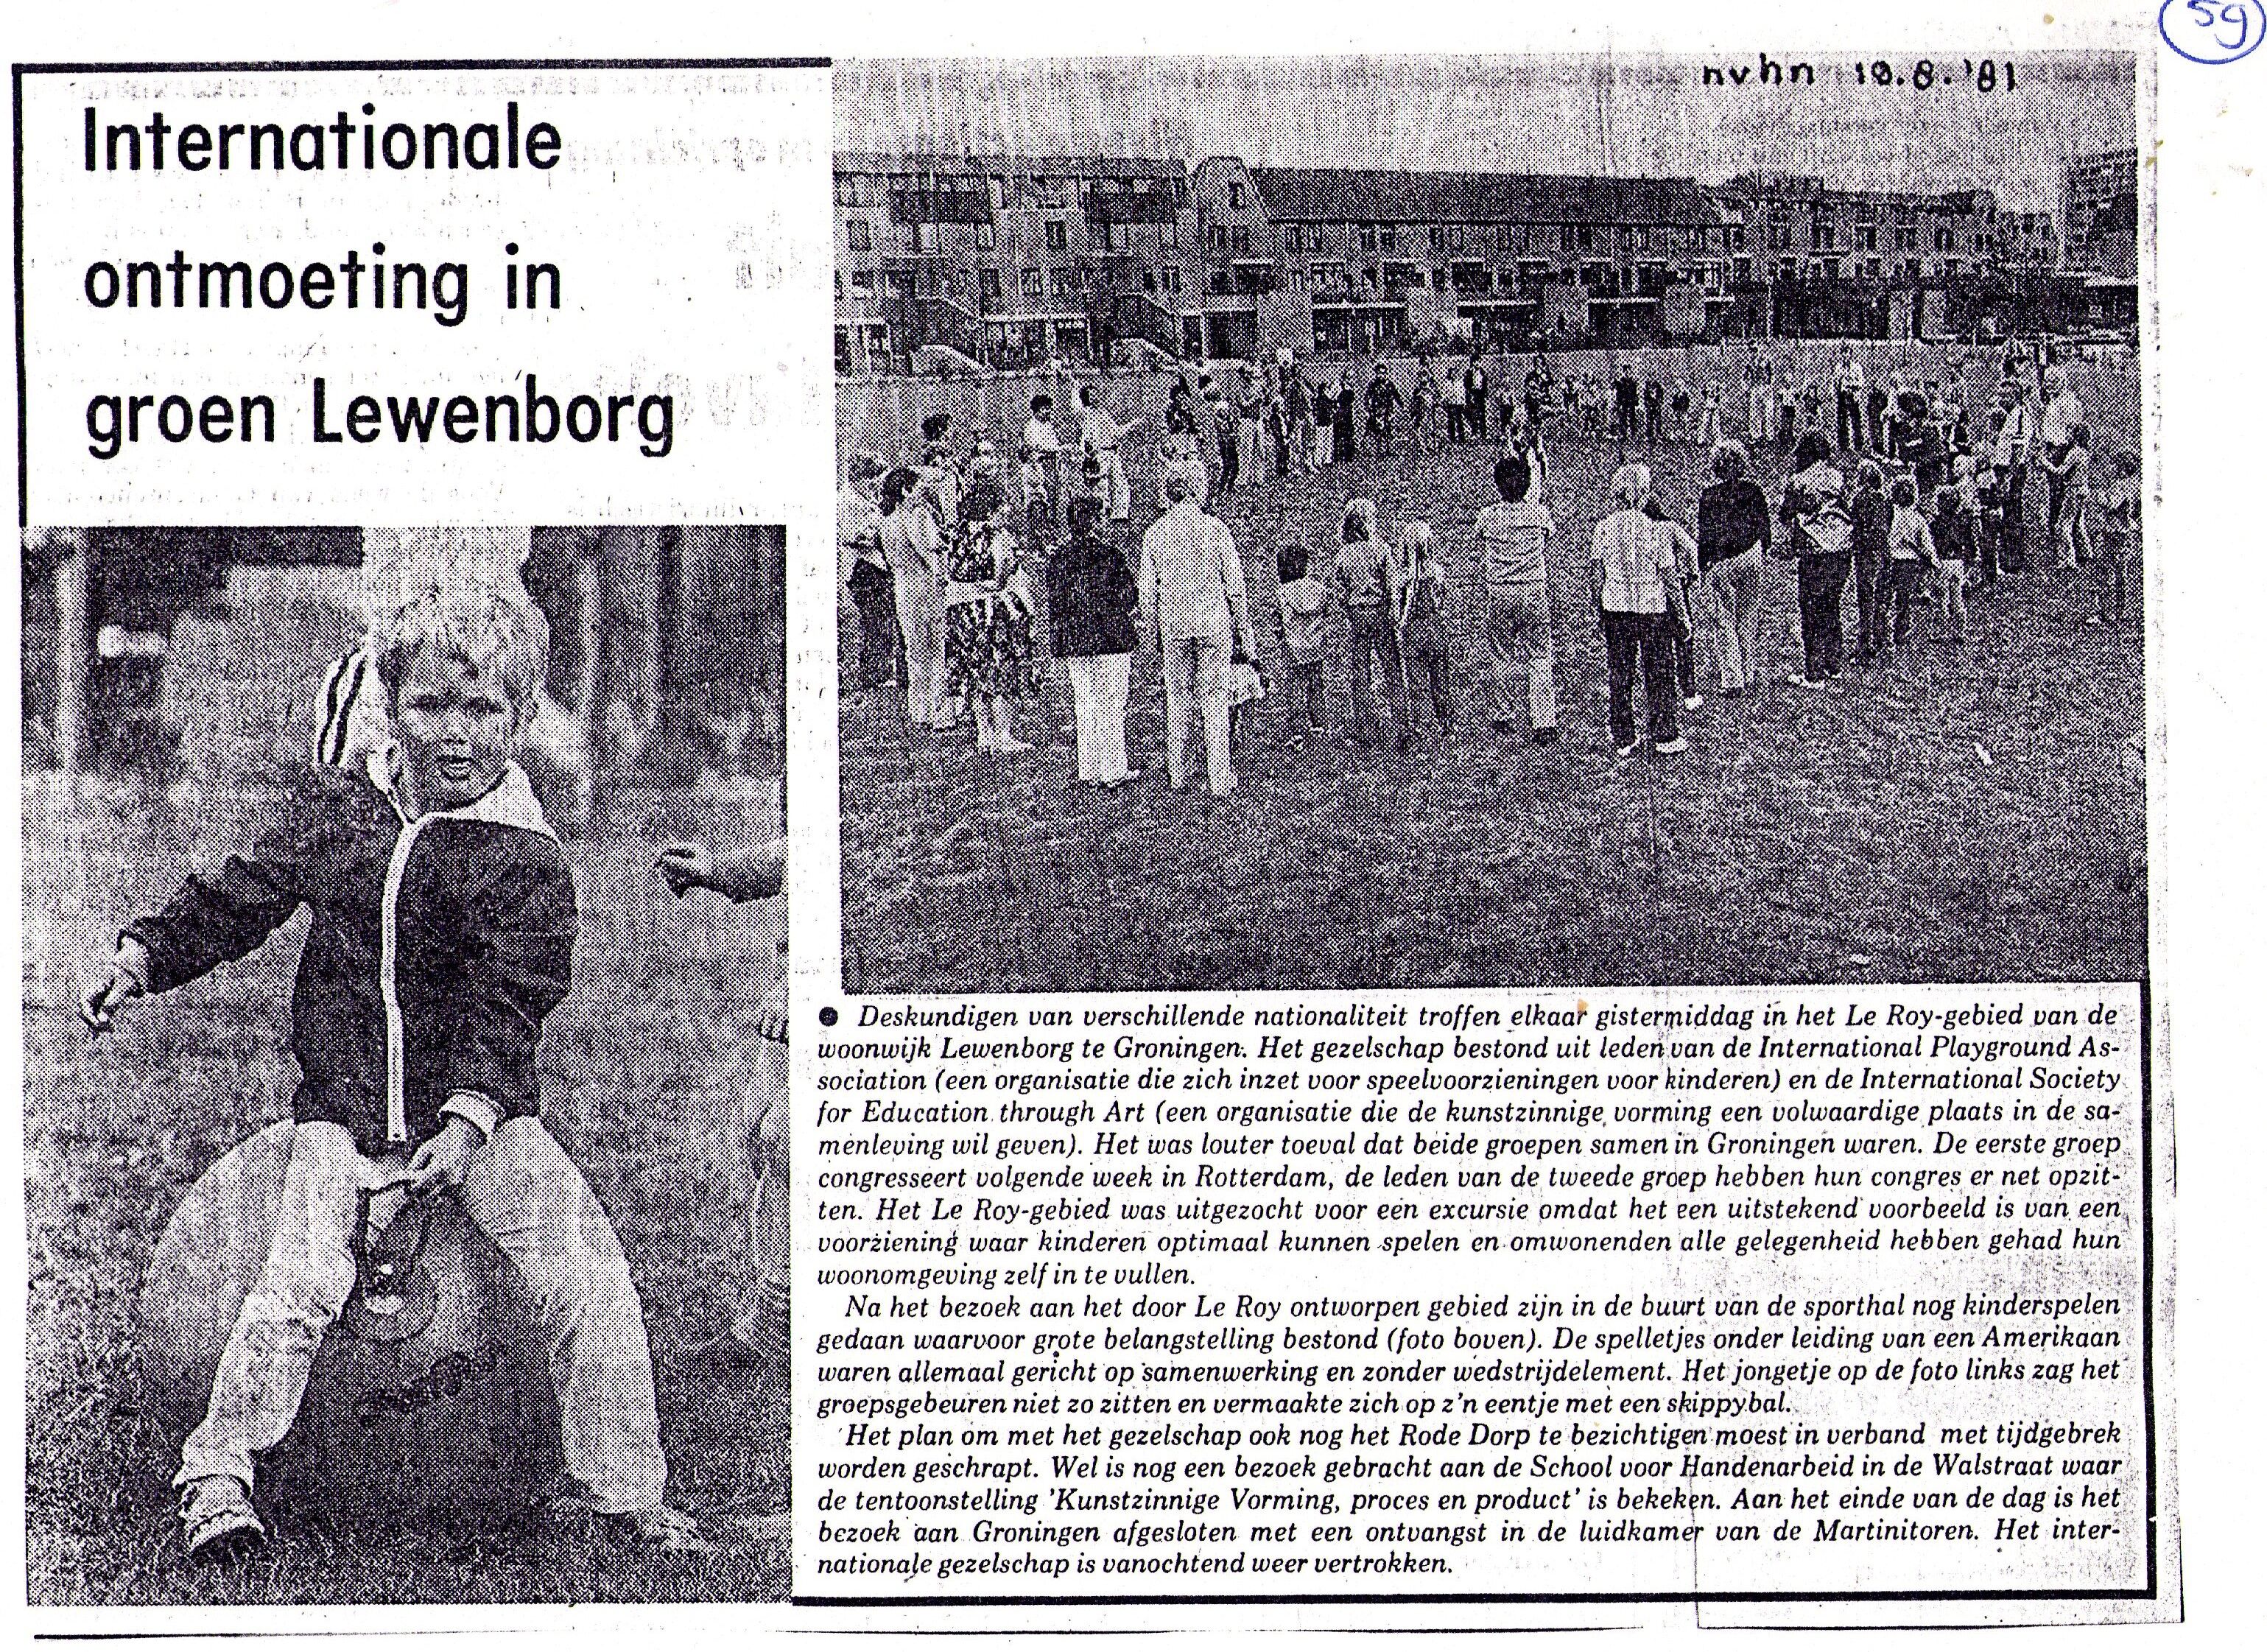 19810819_Internationale_ontmoeting_in_groen_Lewenborg.jpg